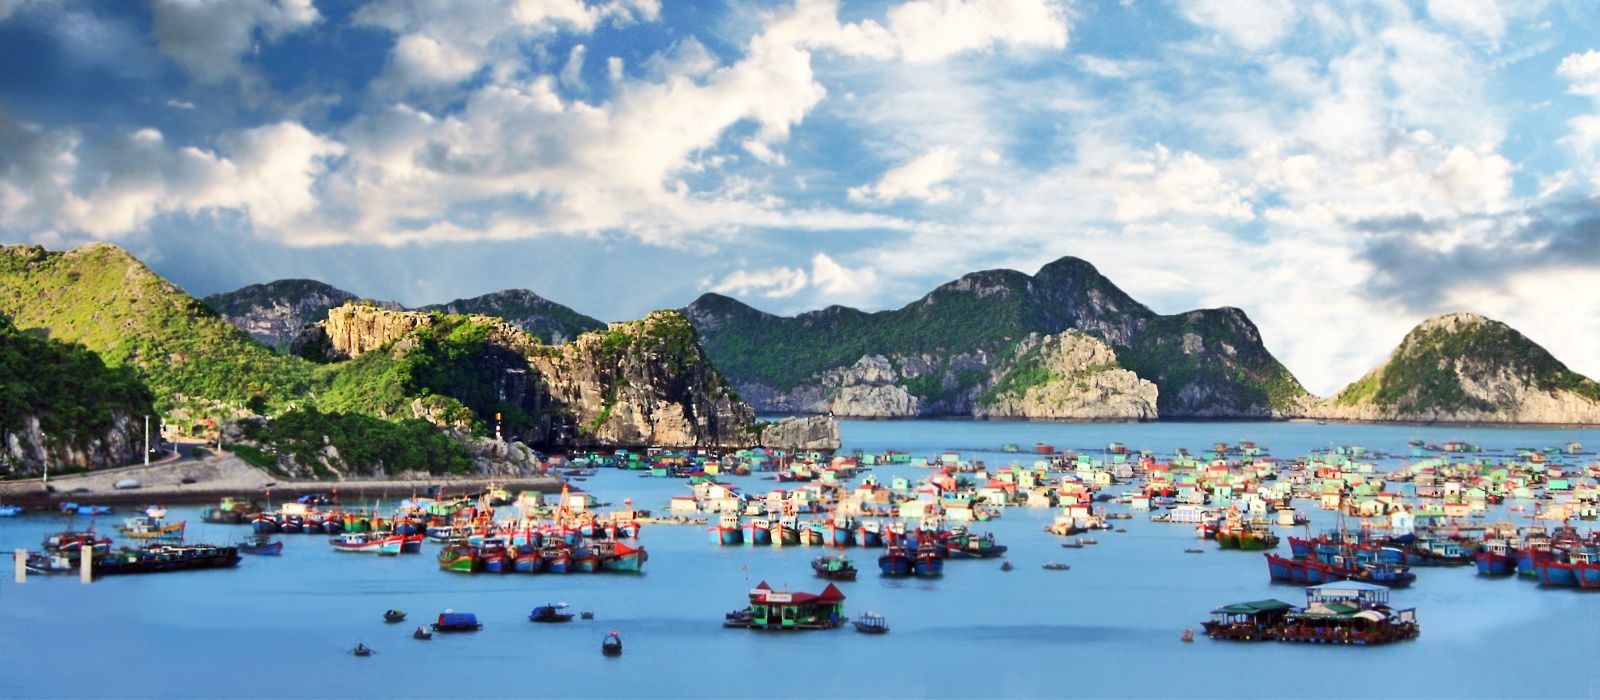 Exclusive Travel Tips for Cat Ba Island in Vietnam